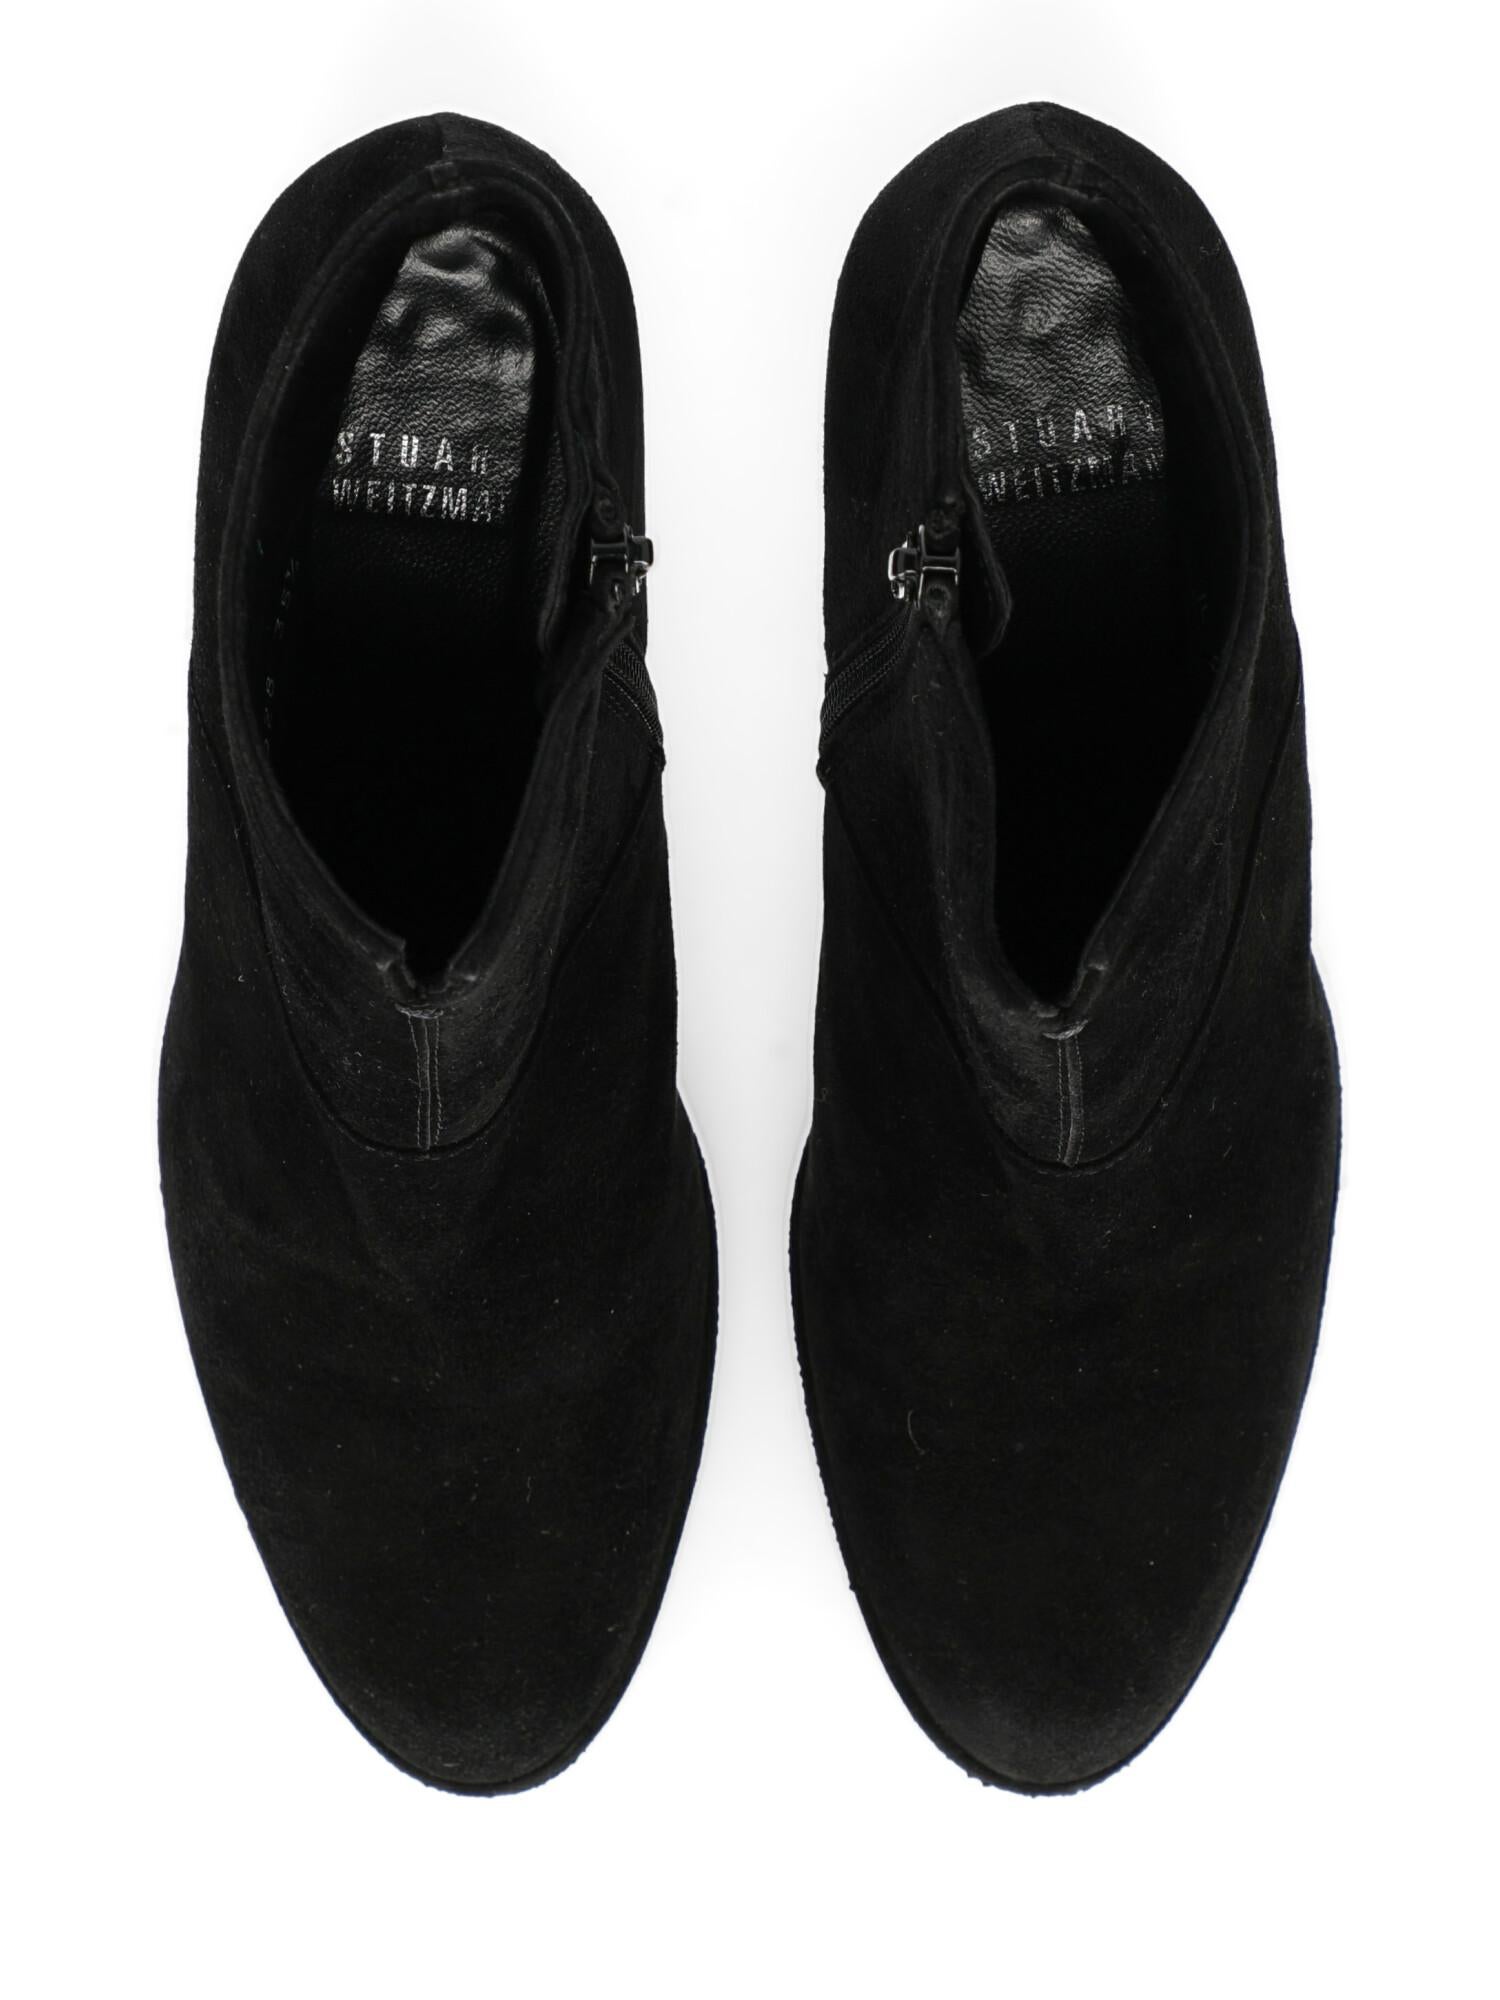 Stuart Weitzman Woman Ankle boots Black EU 35.5 For Sale 1